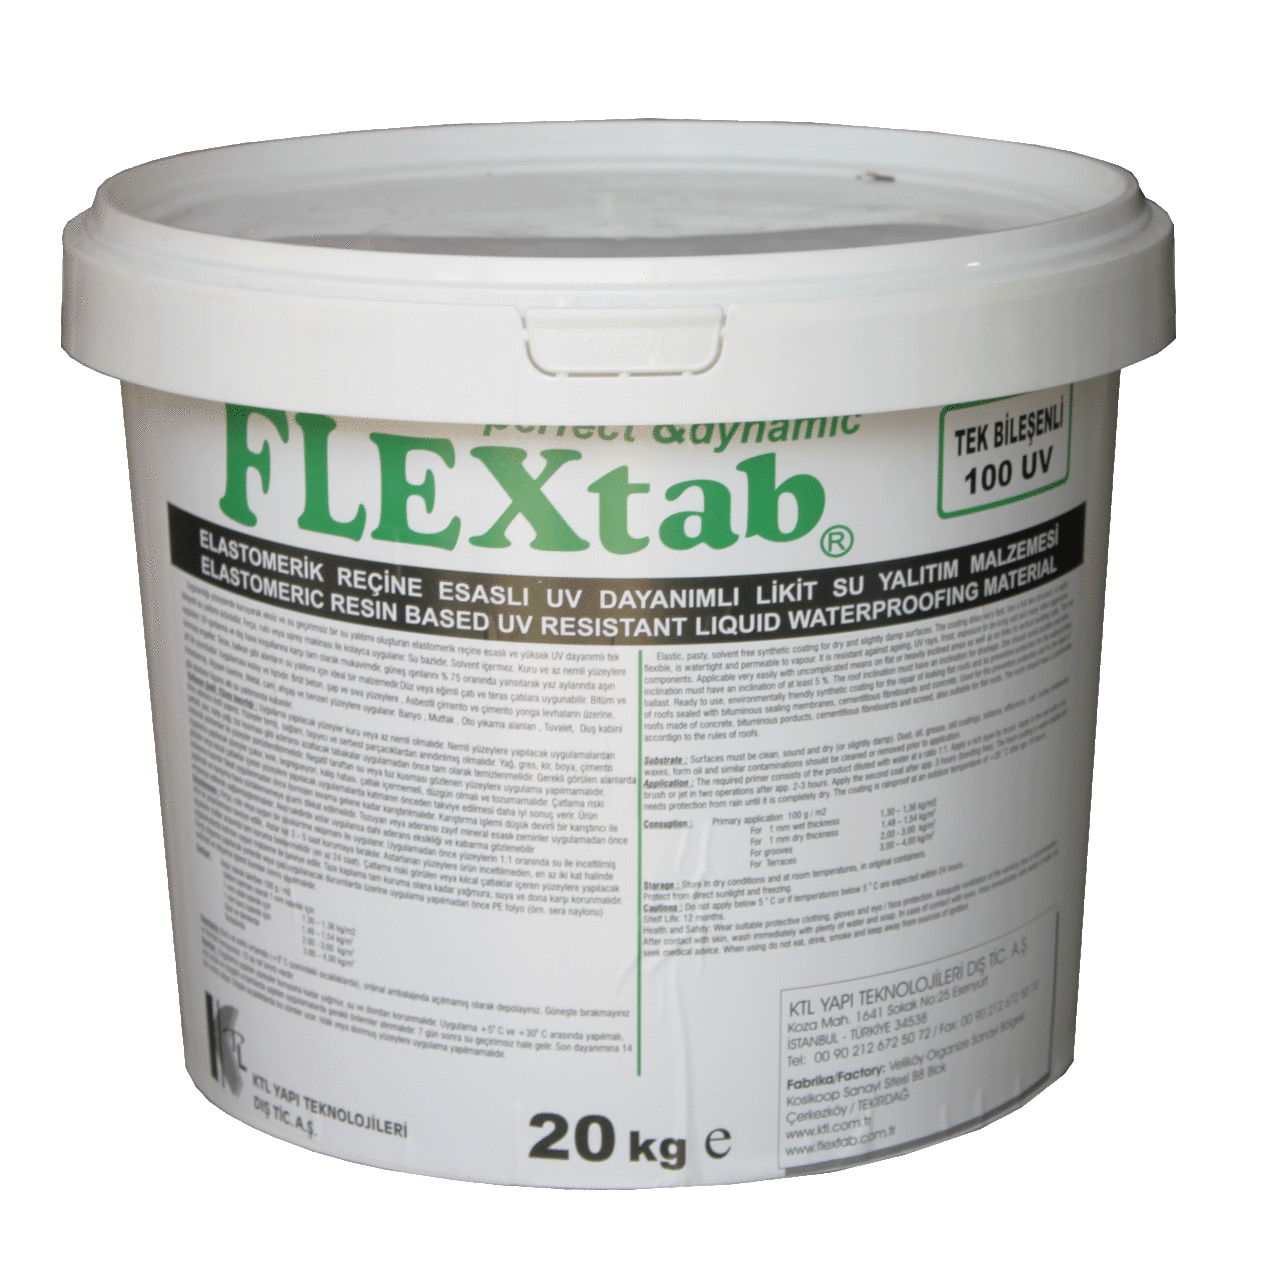 FLEX1AK Elastomerik Reçine Esaslı UV Dayanımlı Su Yalıtım Malzemesi